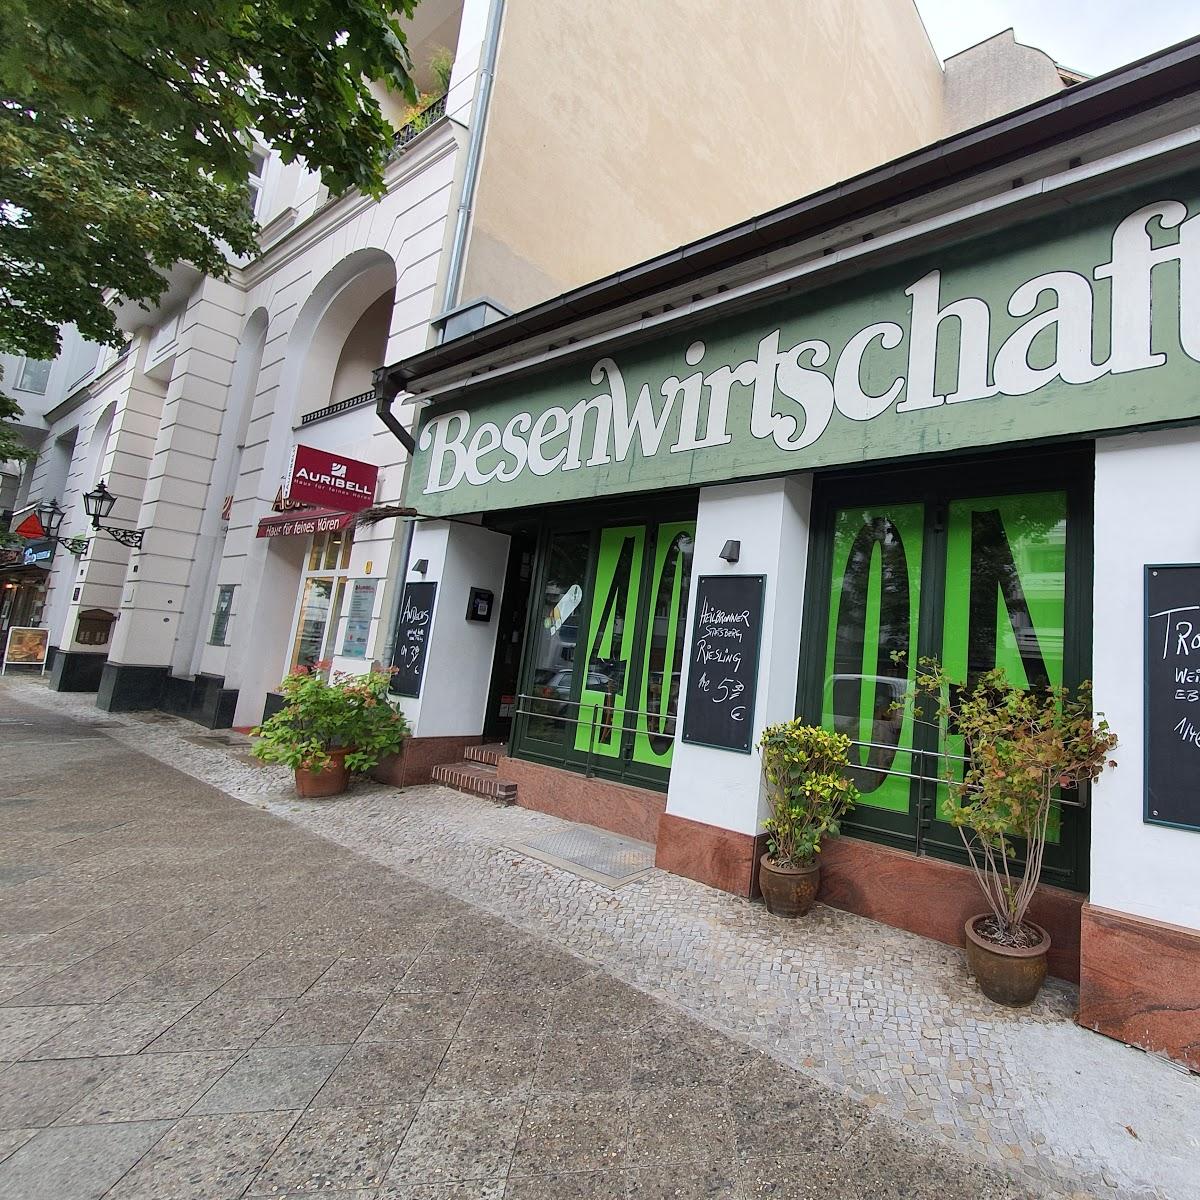 Restaurant "Besenwirtschaft und Weinshop" in Berlin